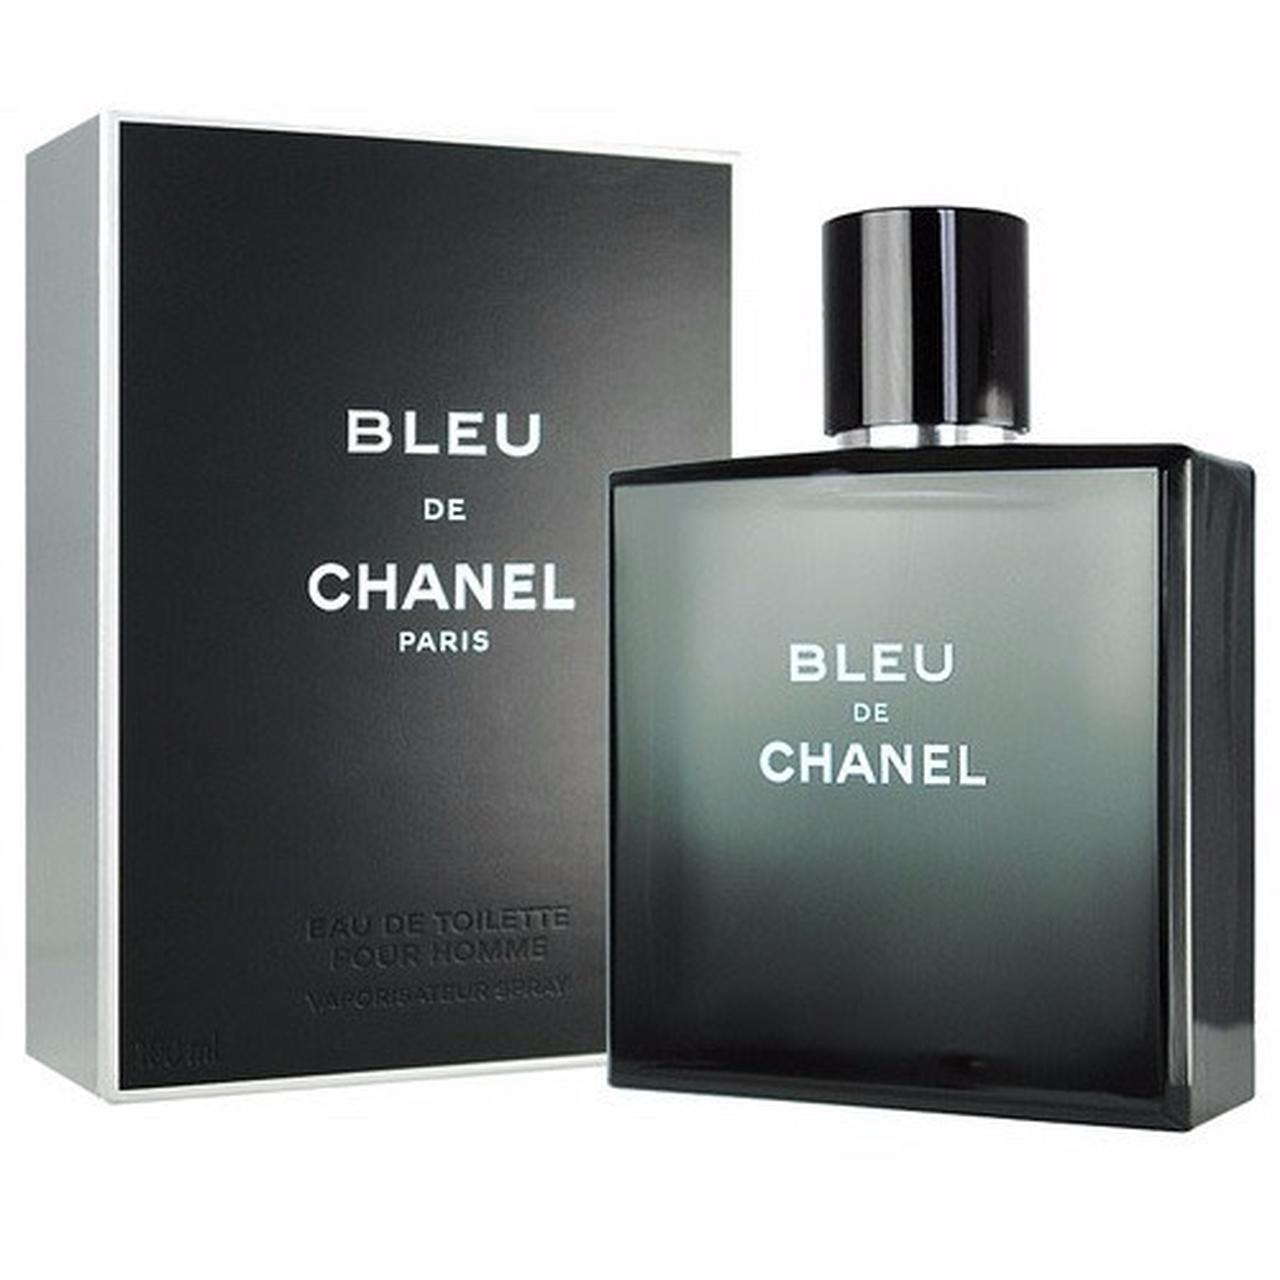 Chanel BLEU, BLEU de CHANEL EAU DE TOILETTE 100ml. - Depop